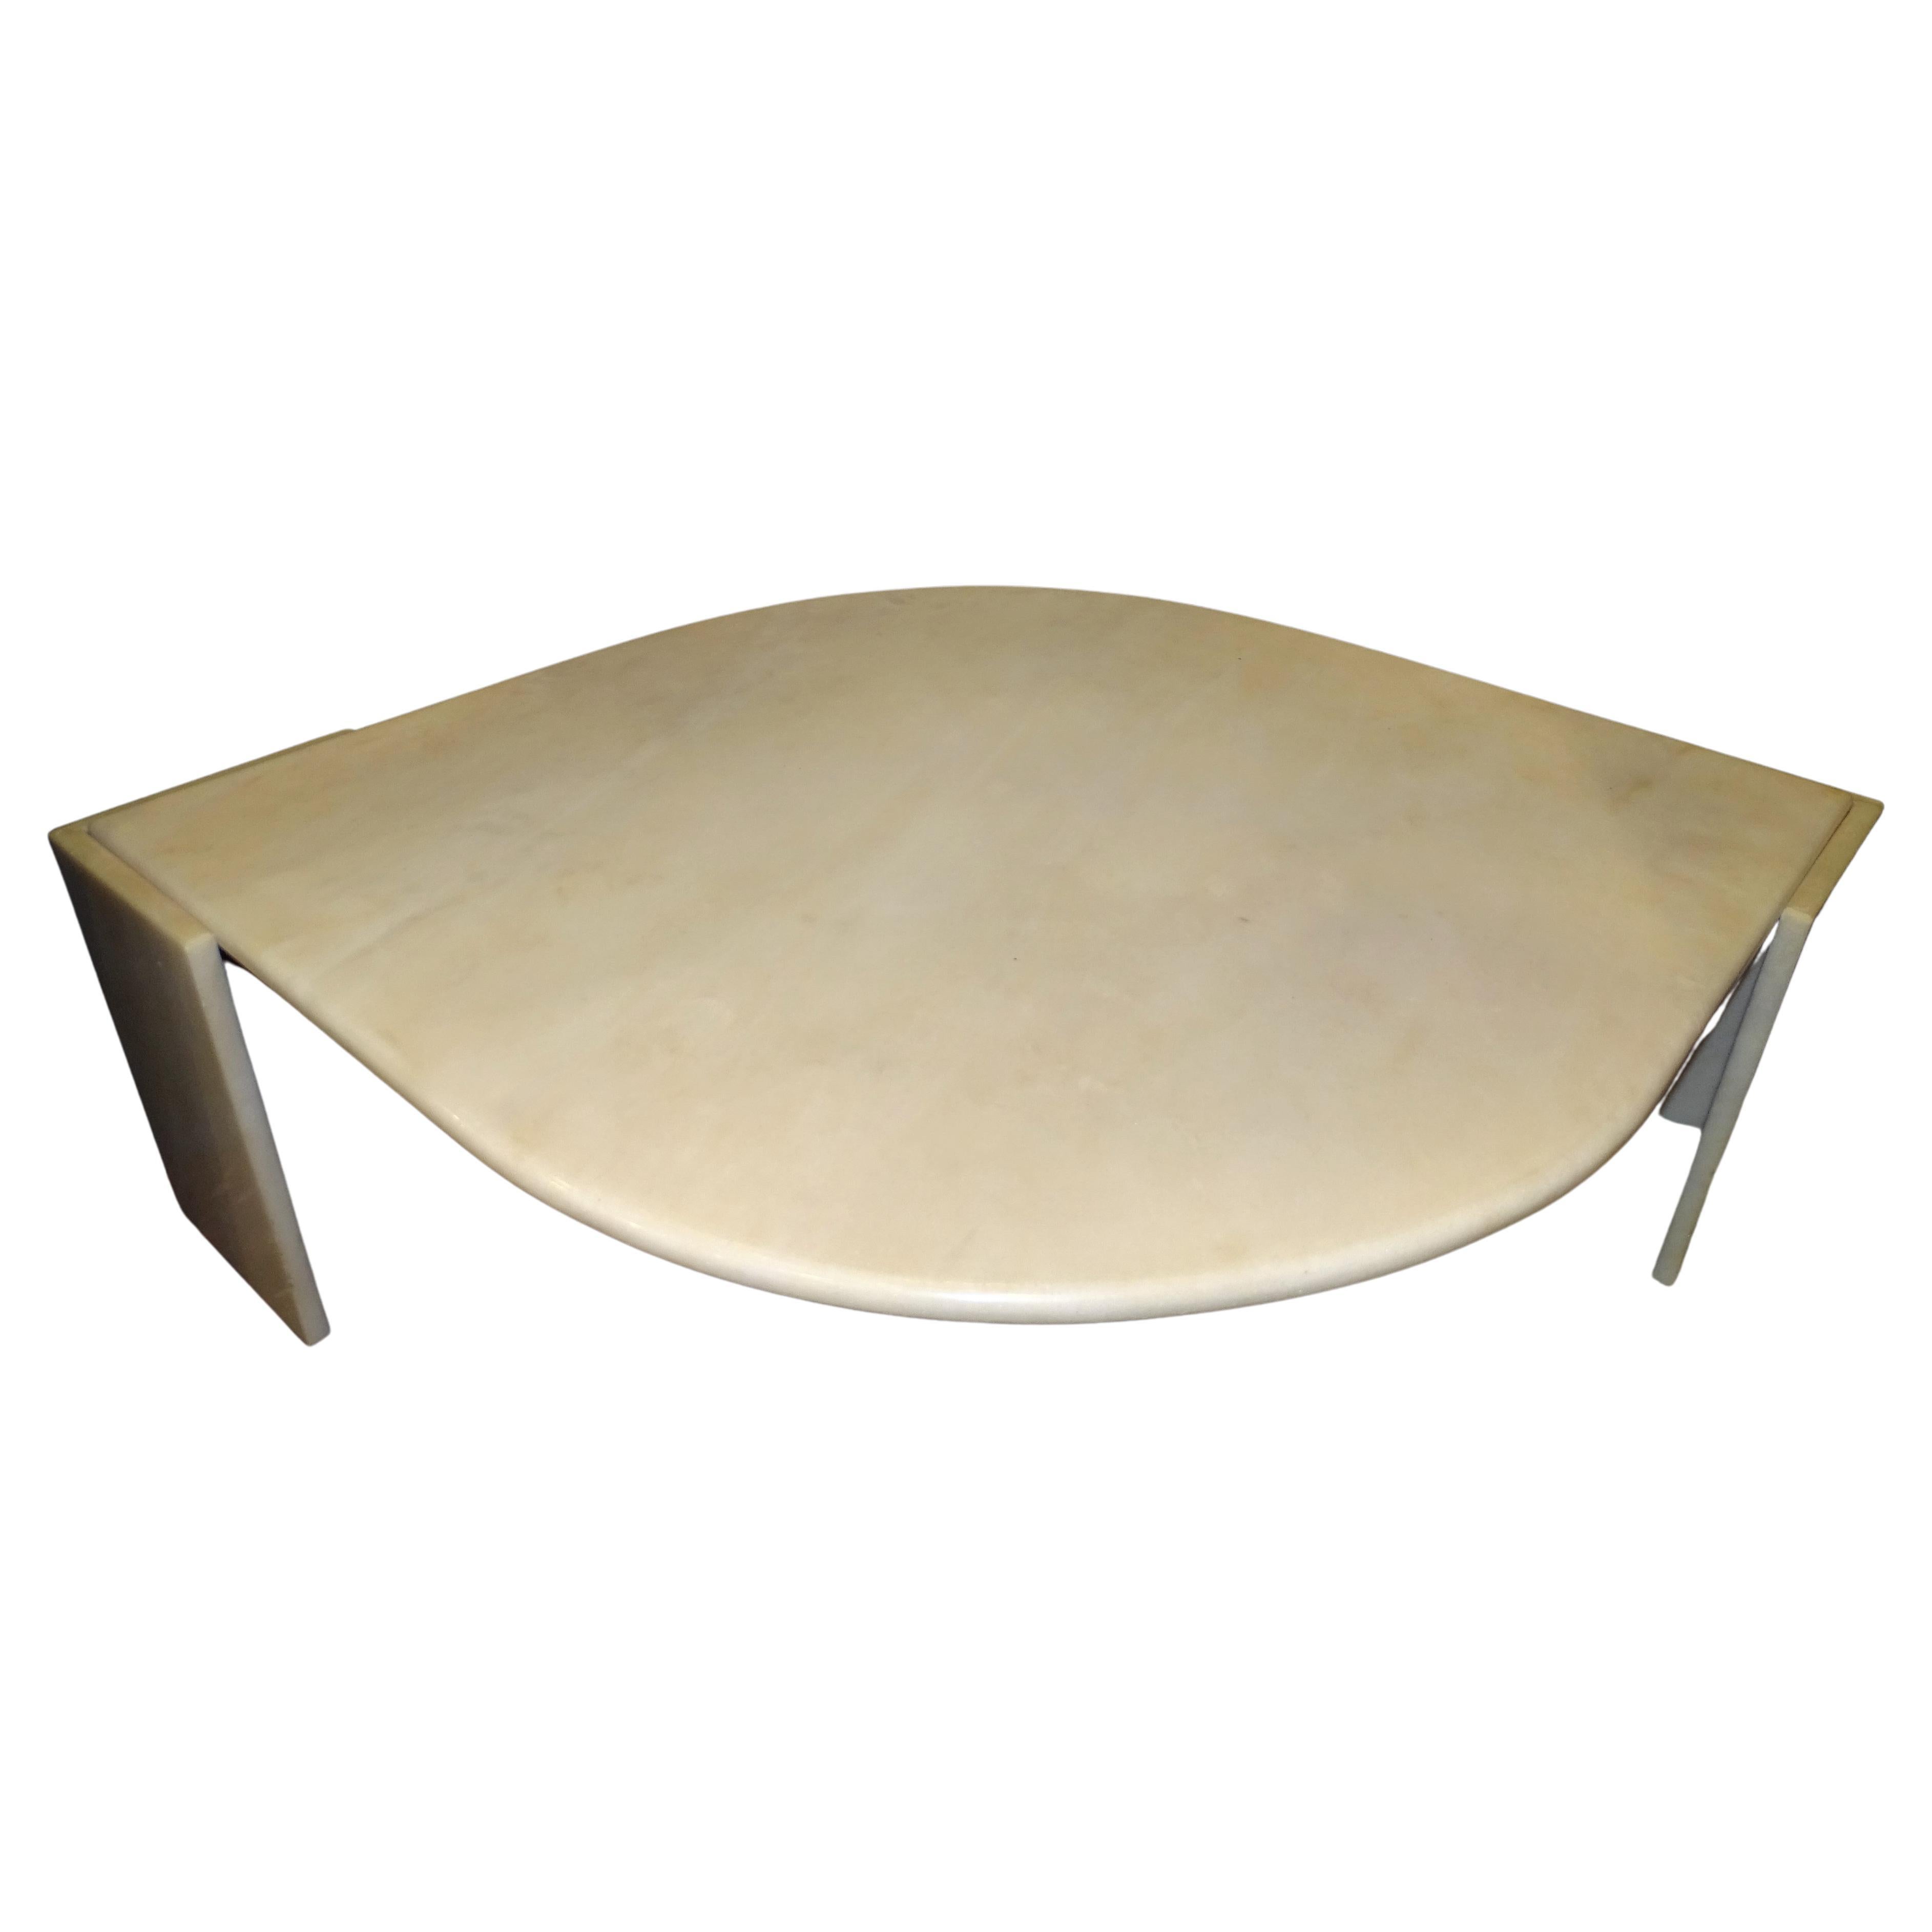 Table basse en marbre beige français Roche Bobois des années 70, table centrale